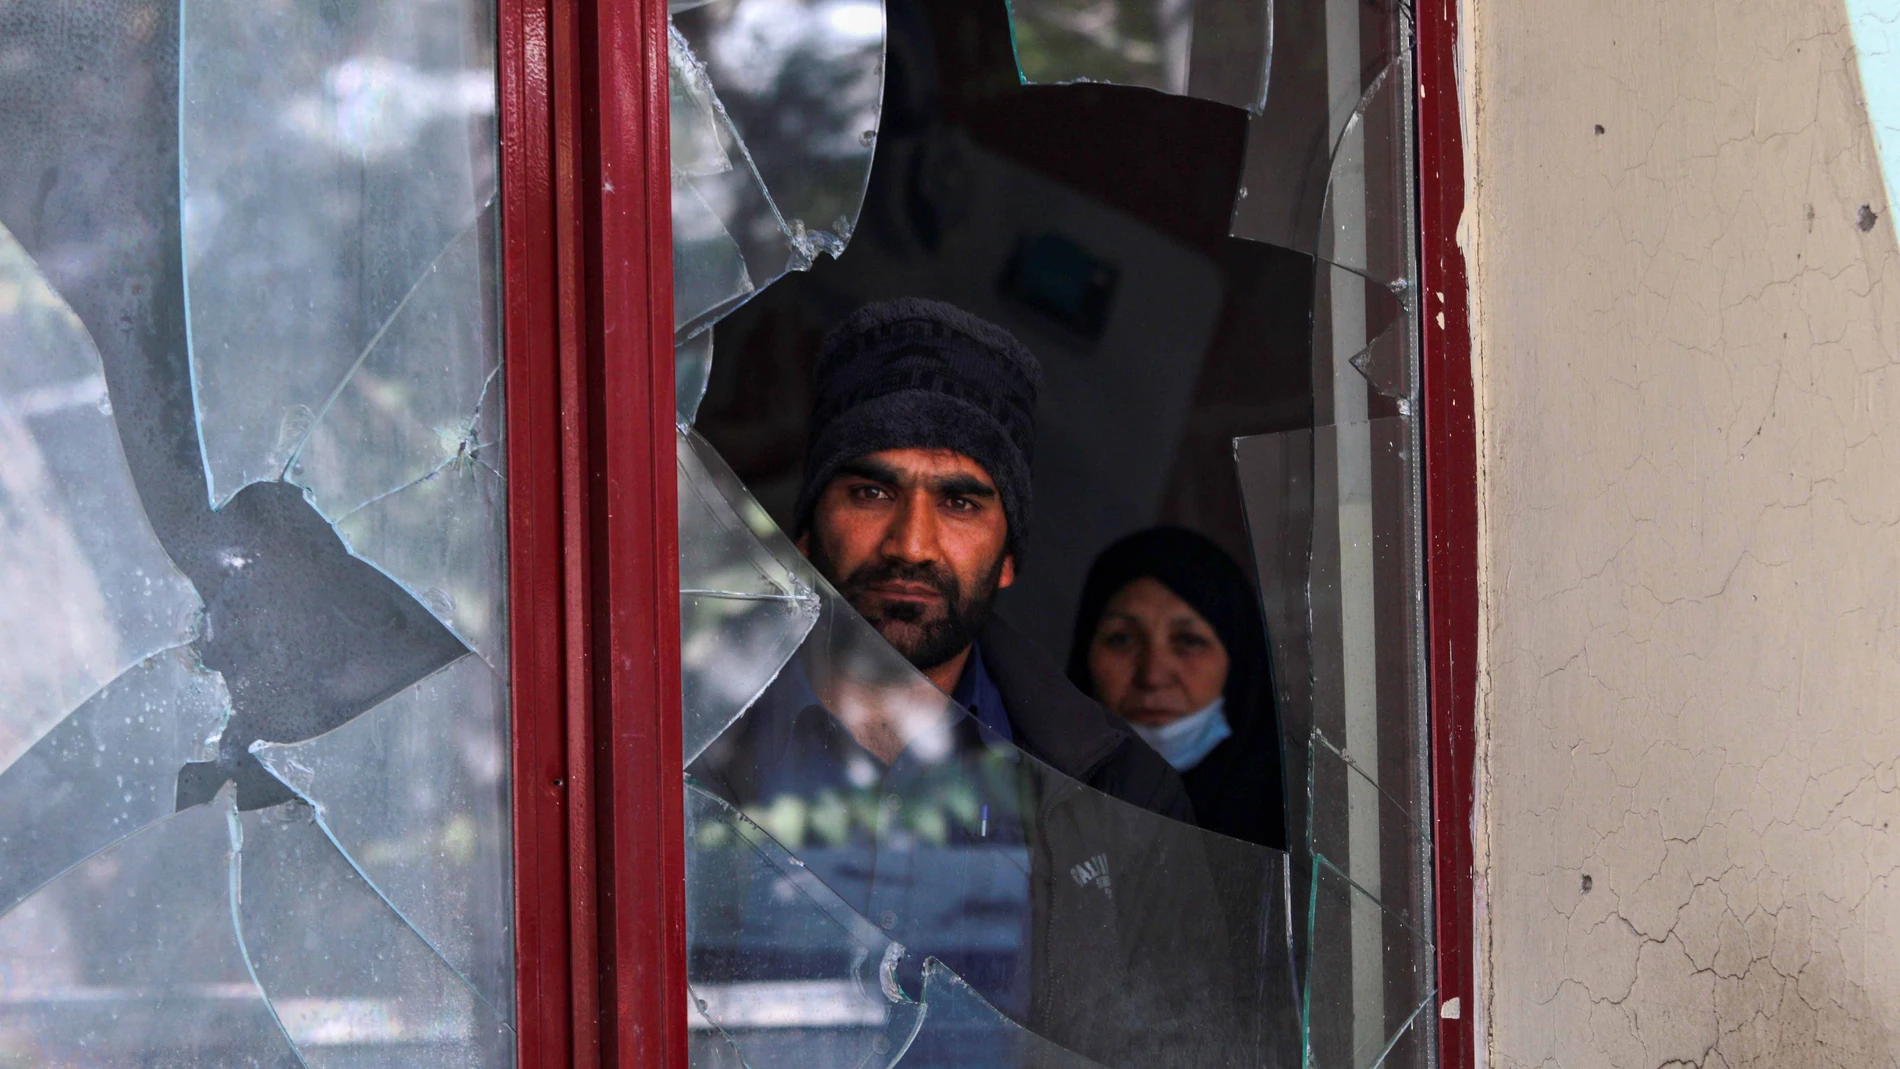 Una persona observa a través de los cristales rotos de una ventana tras la explosión del terrorista suicida EFE/EPA/STRINGER